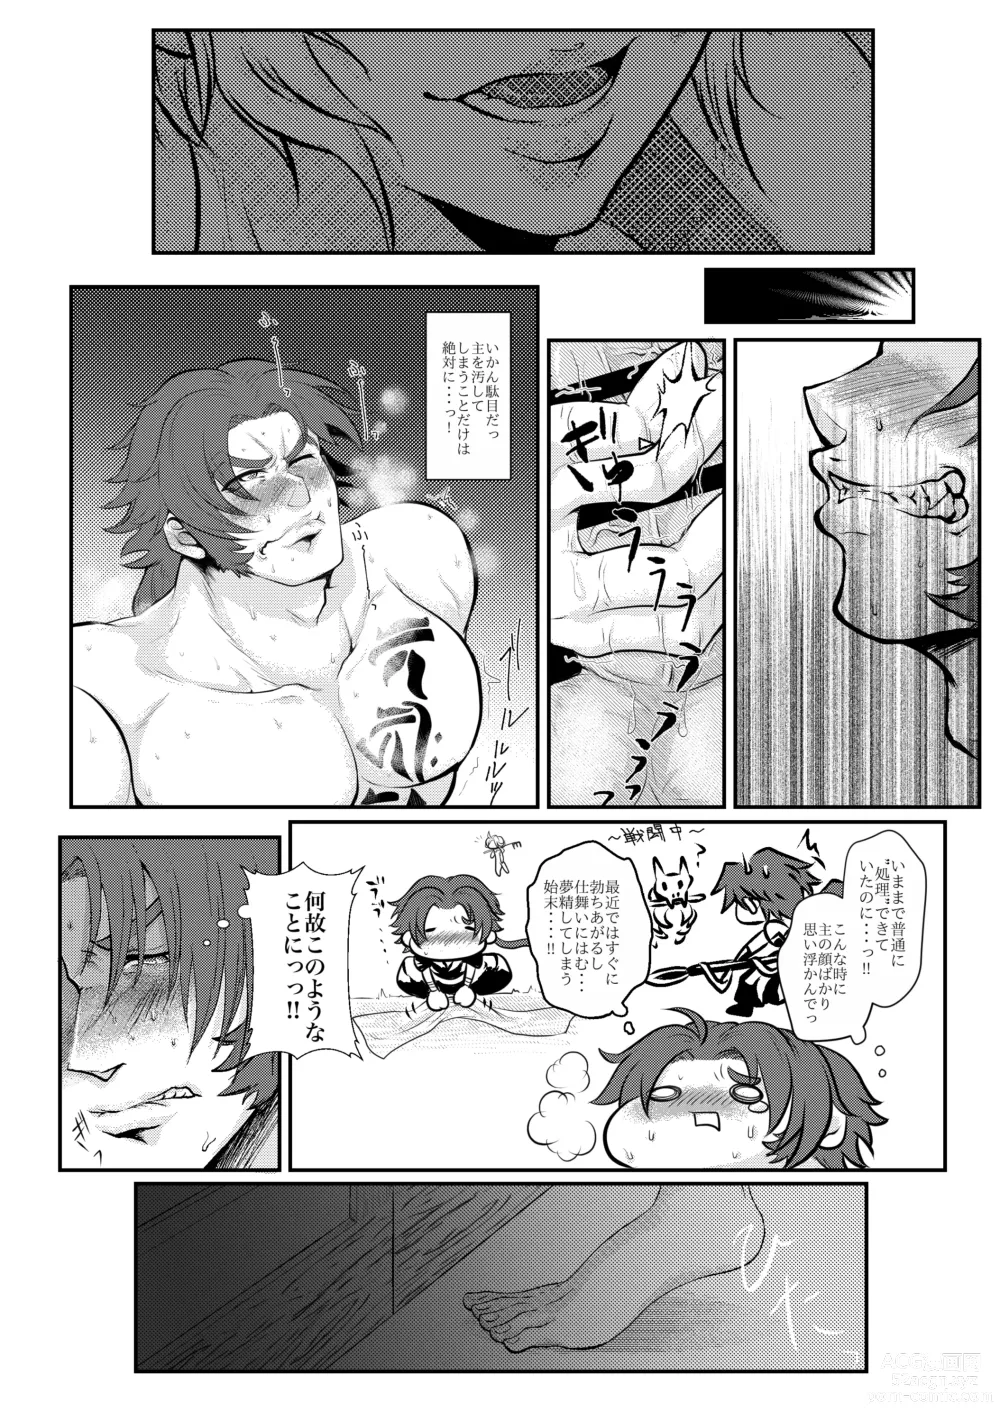 Page 14 of doujinshi Hitori Esu Chino Yari Kata